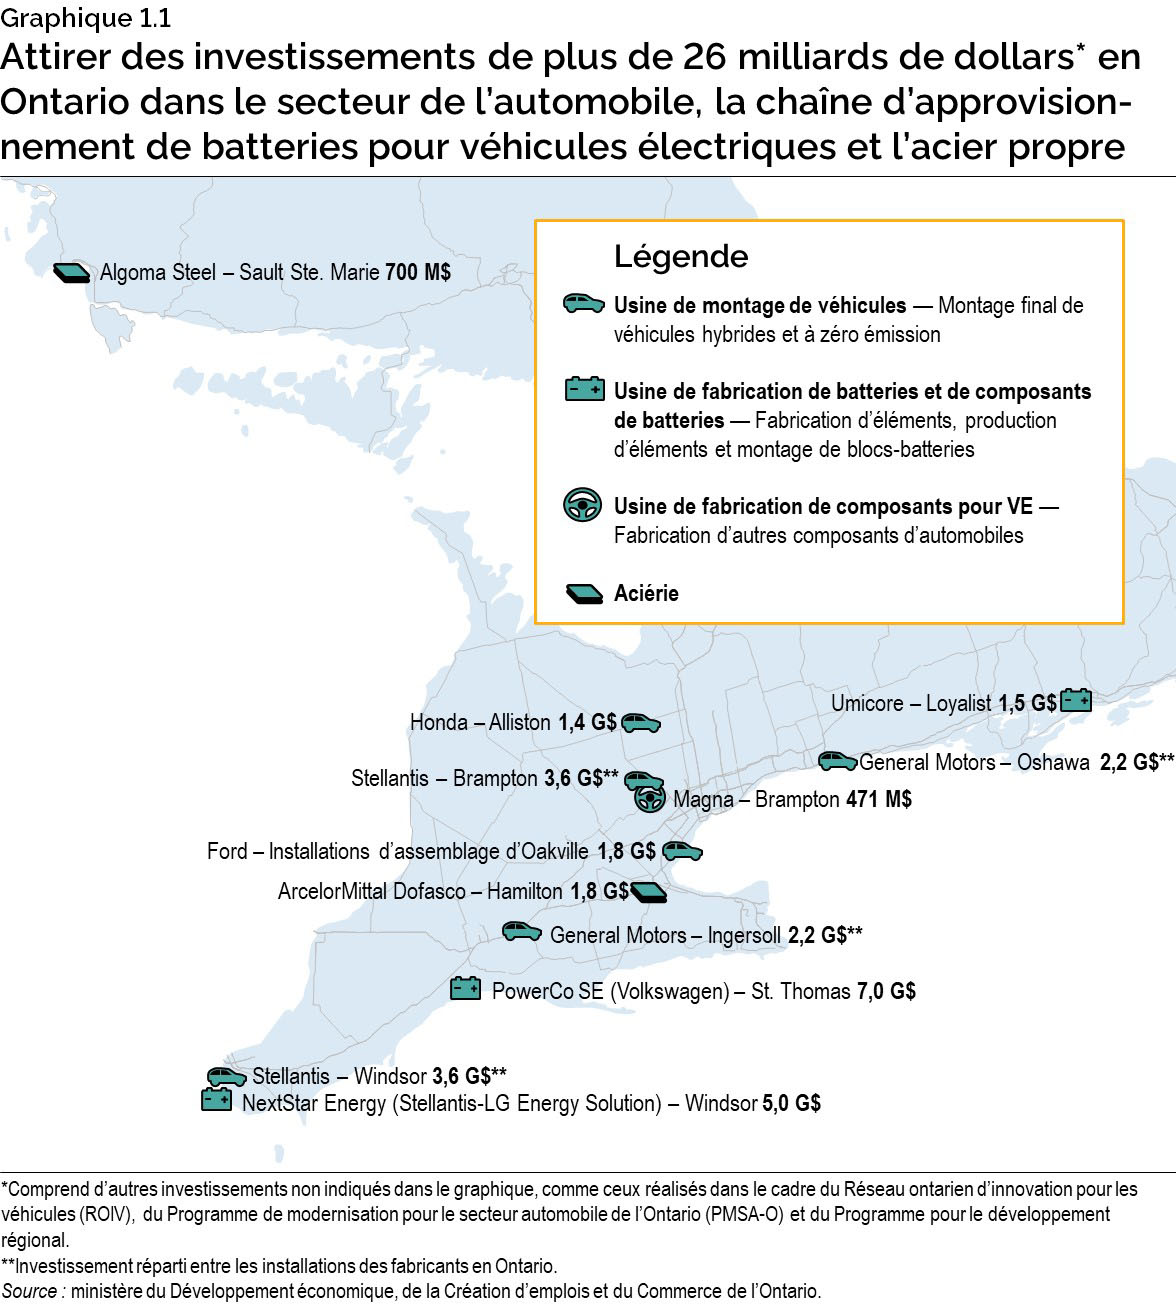 Graphique 1.1 : Attirer des investissements de plus de 26 milliards de dollars en Ontario dans le secteur de l’automobile, la chaîne d’approvisionnement de batteries pour VE et l’acier propre